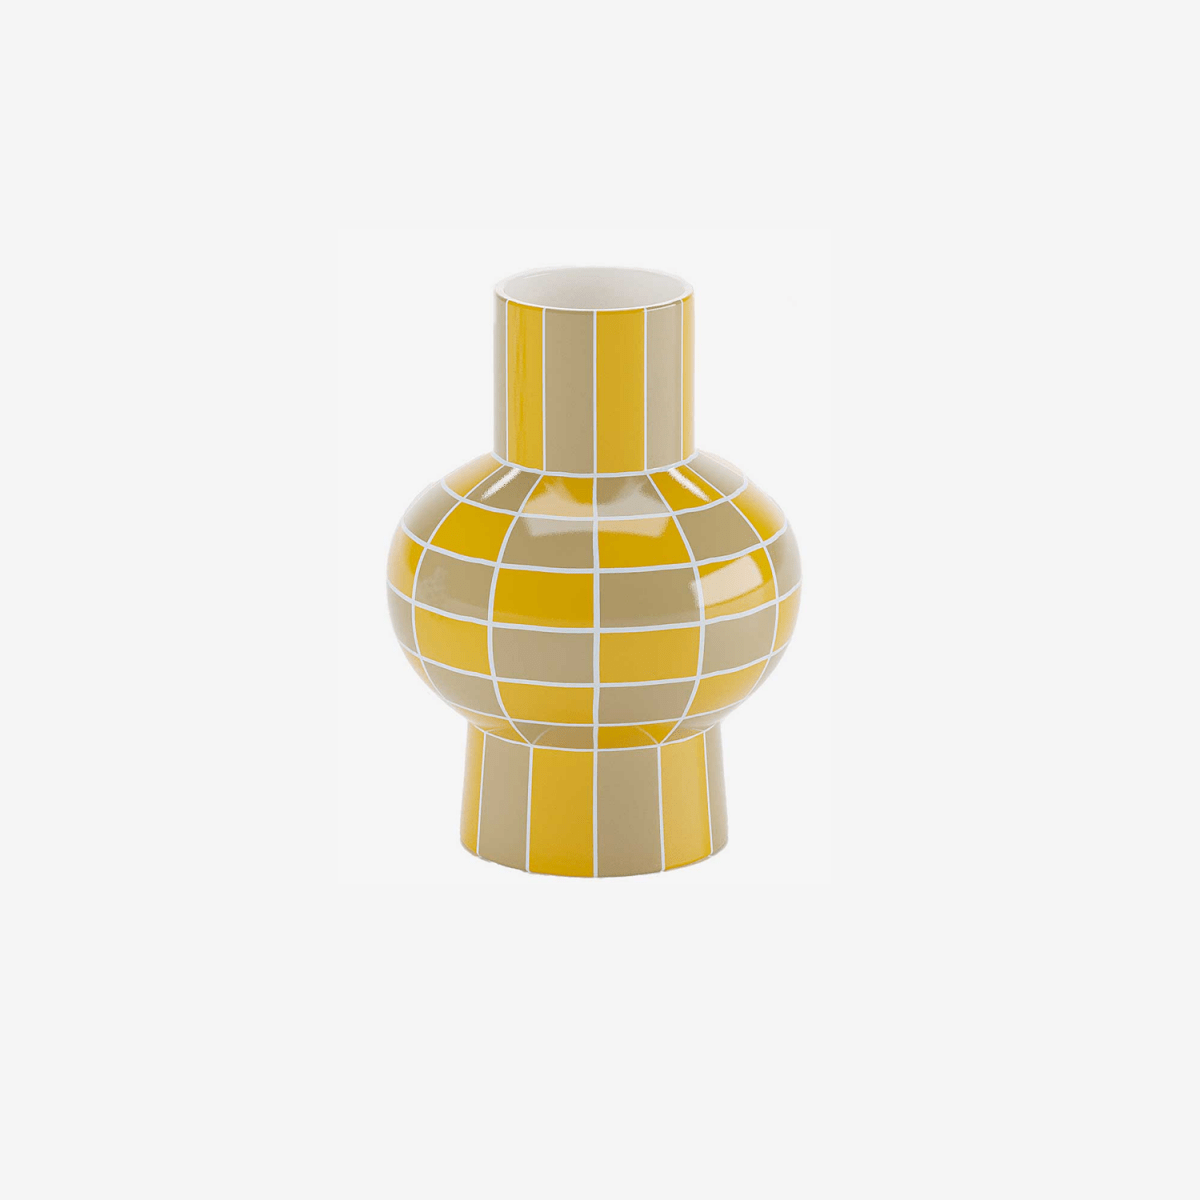 Ce vase en céramique brillante, avec sa forme originale et son motif damier jaune est un modèle d'élégance